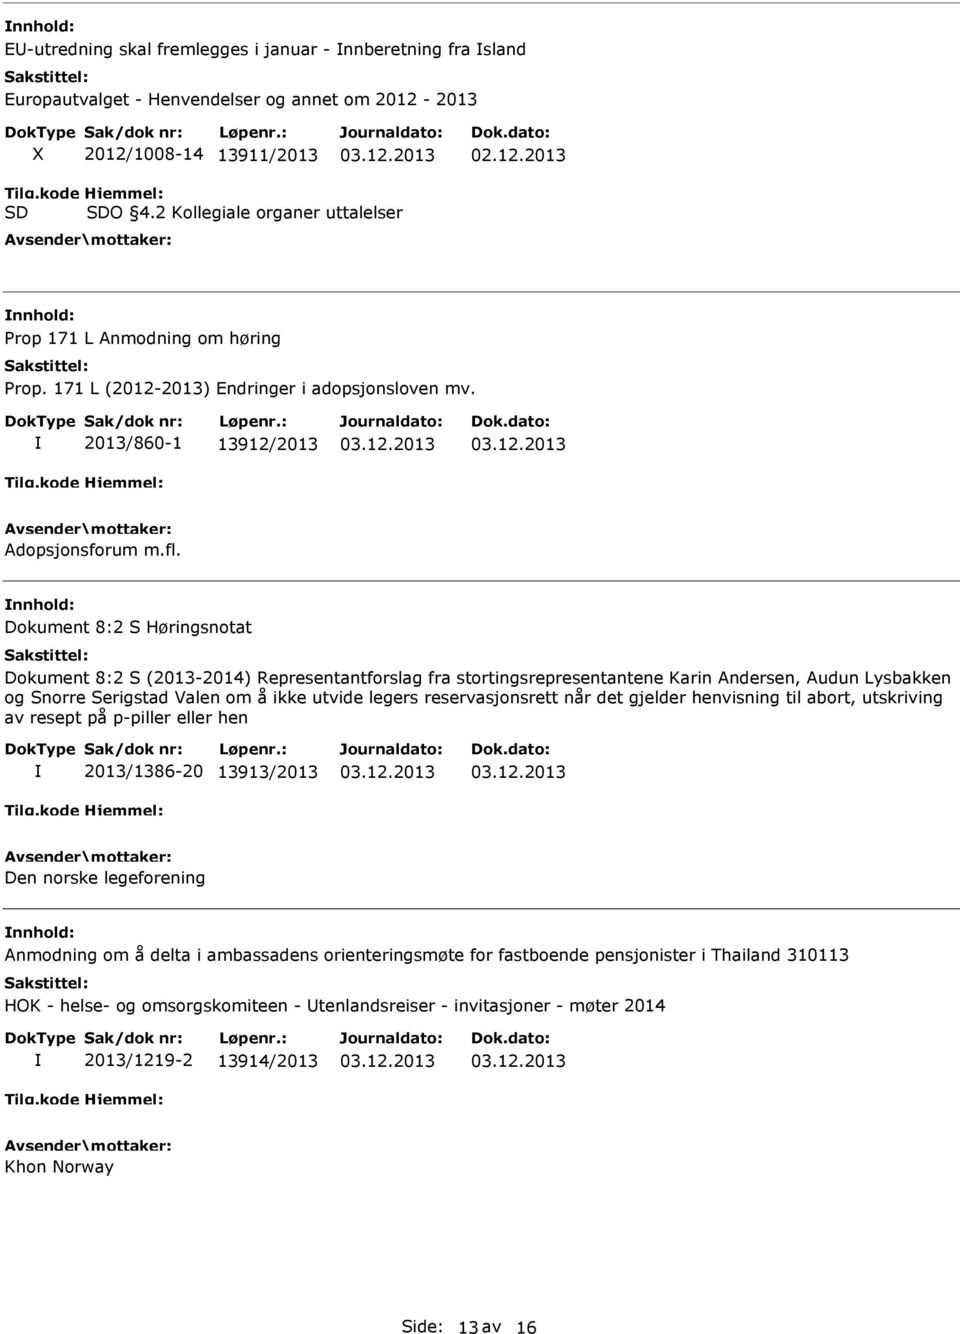 Dokument 8:2 S Høringsnotat Dokument 8:2 S (2013-2014) Representantforslag fra stortingsrepresentantene Karin Andersen, Audun Lysbakken og Snorre Serigstad Valen om å ikke utvide legers